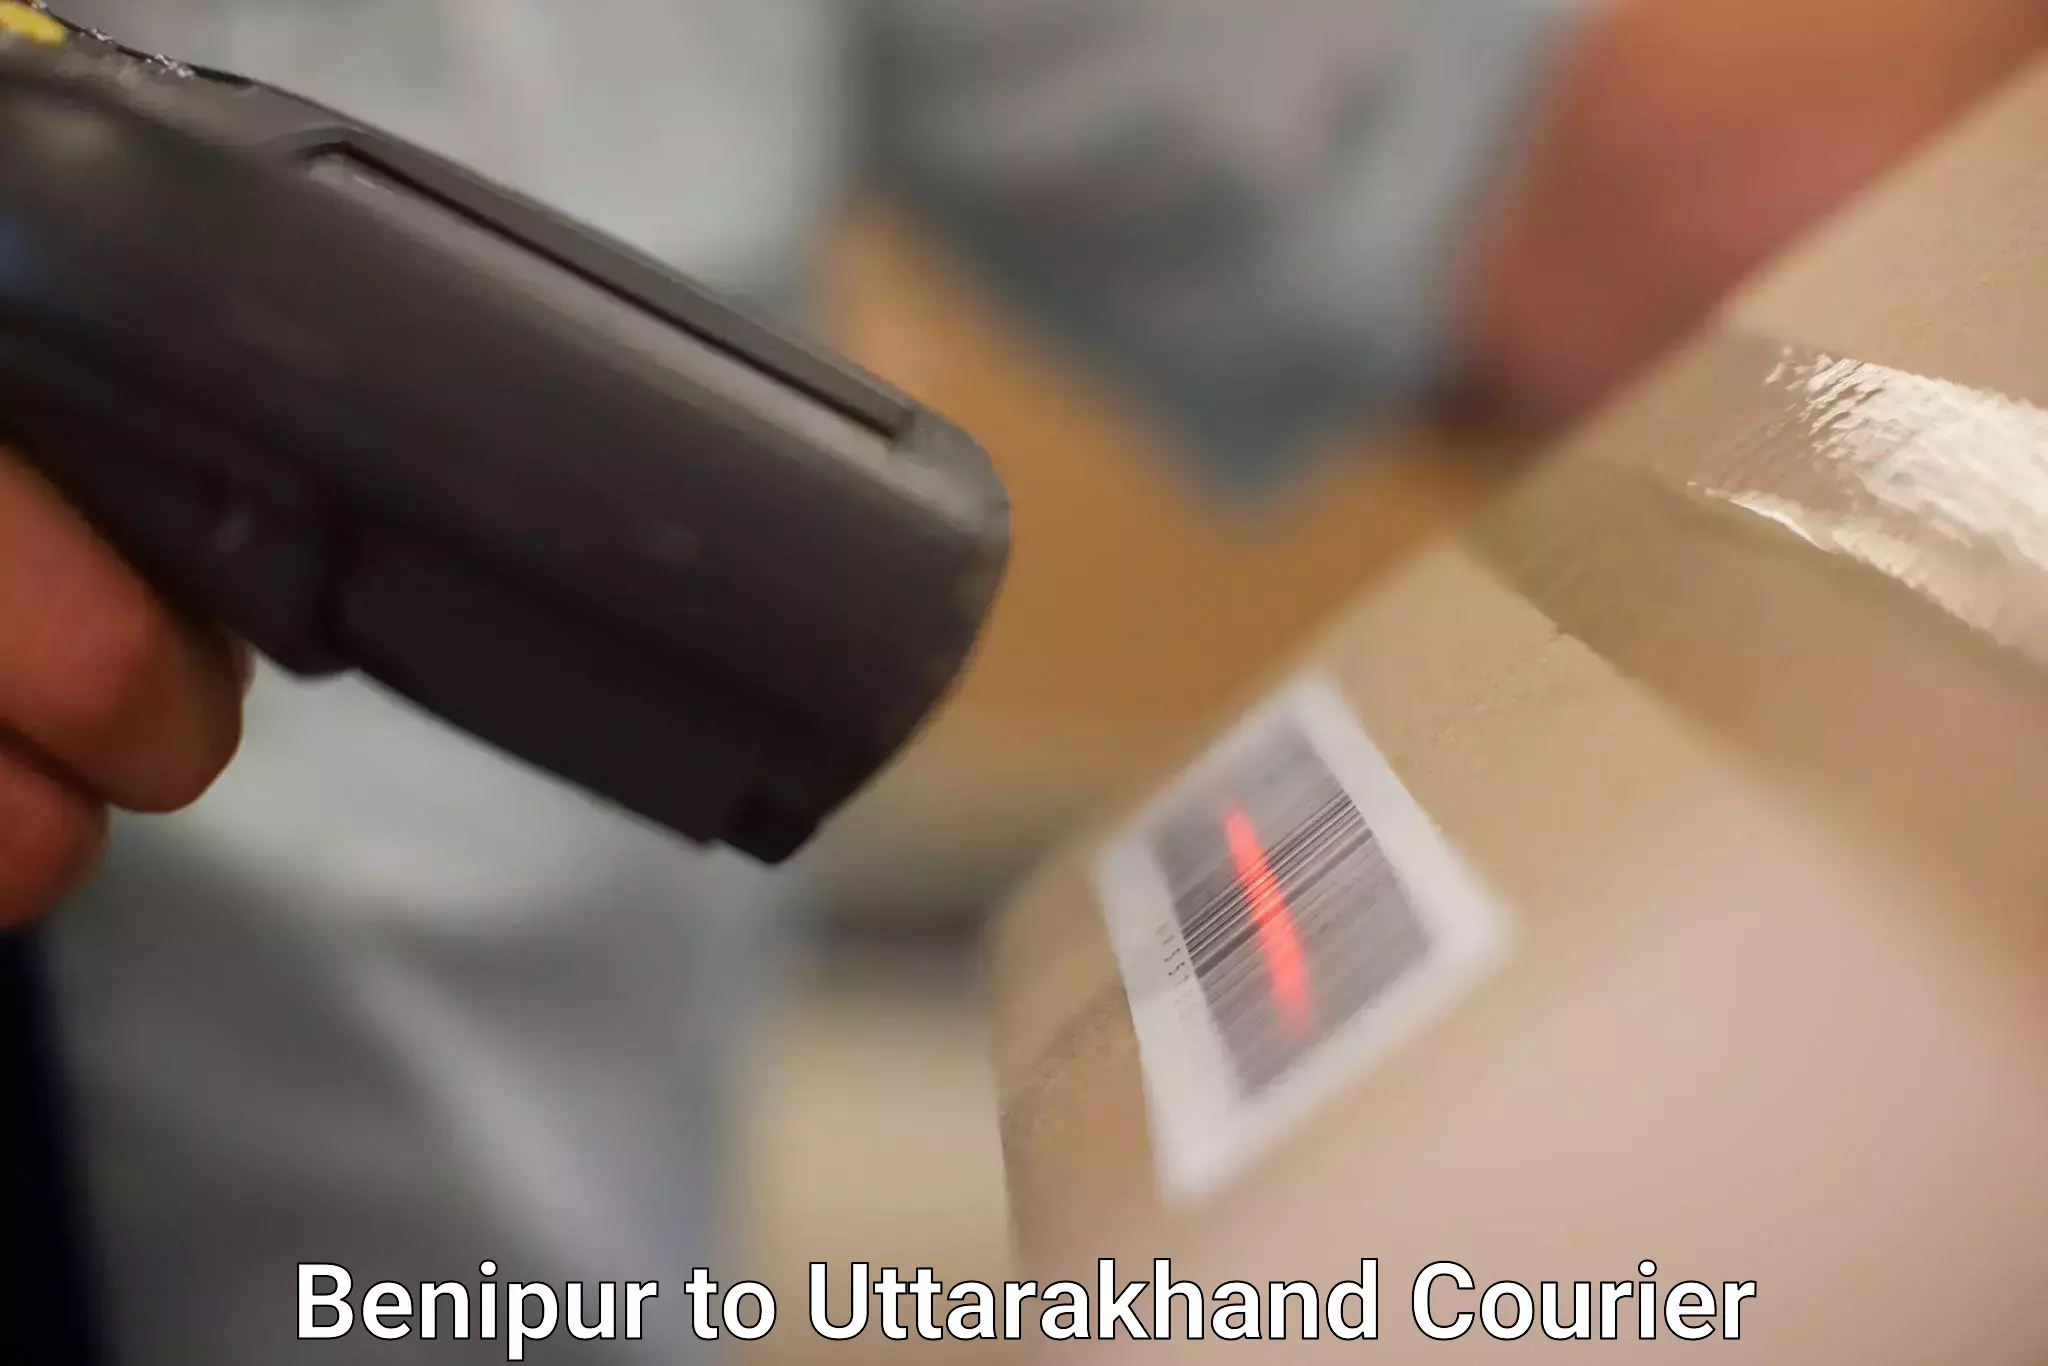 Flexible delivery scheduling in Benipur to IIT Roorkee